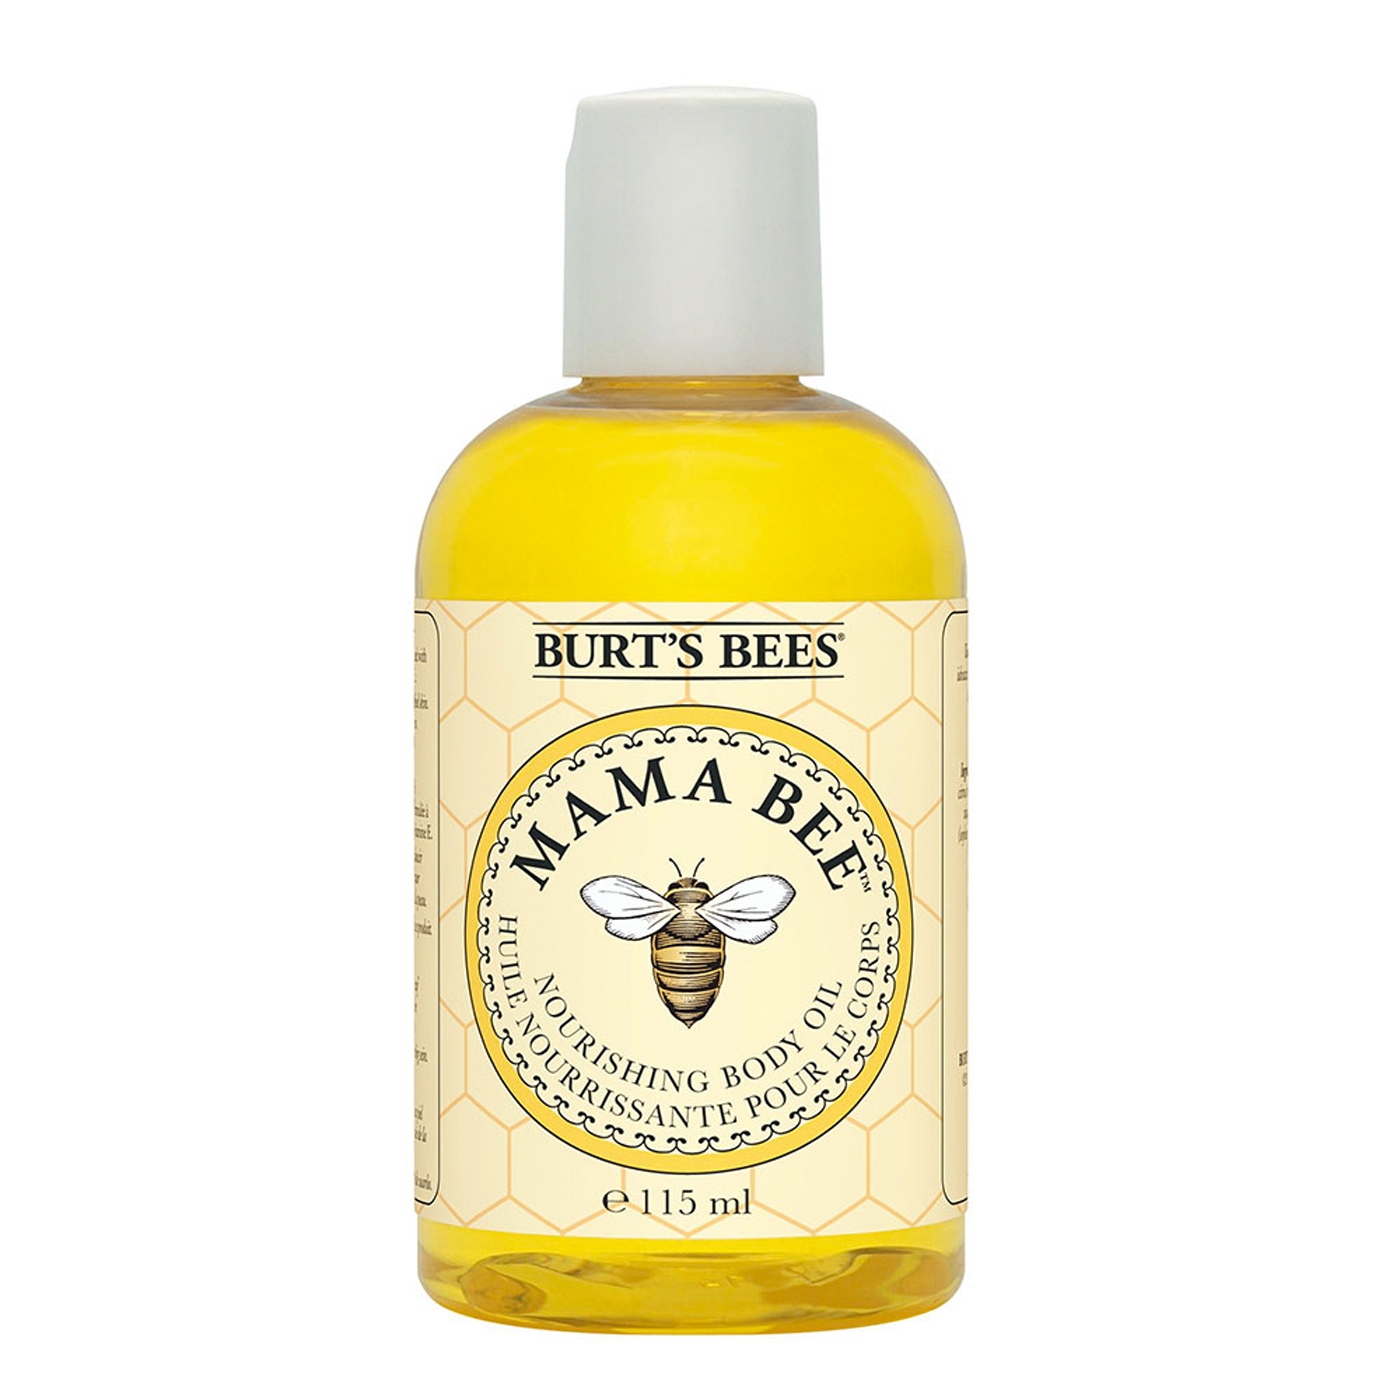  Burts Bees Annelere Özel Vücut Bakım Yağı - Mama Bee Body Oil 115 ml